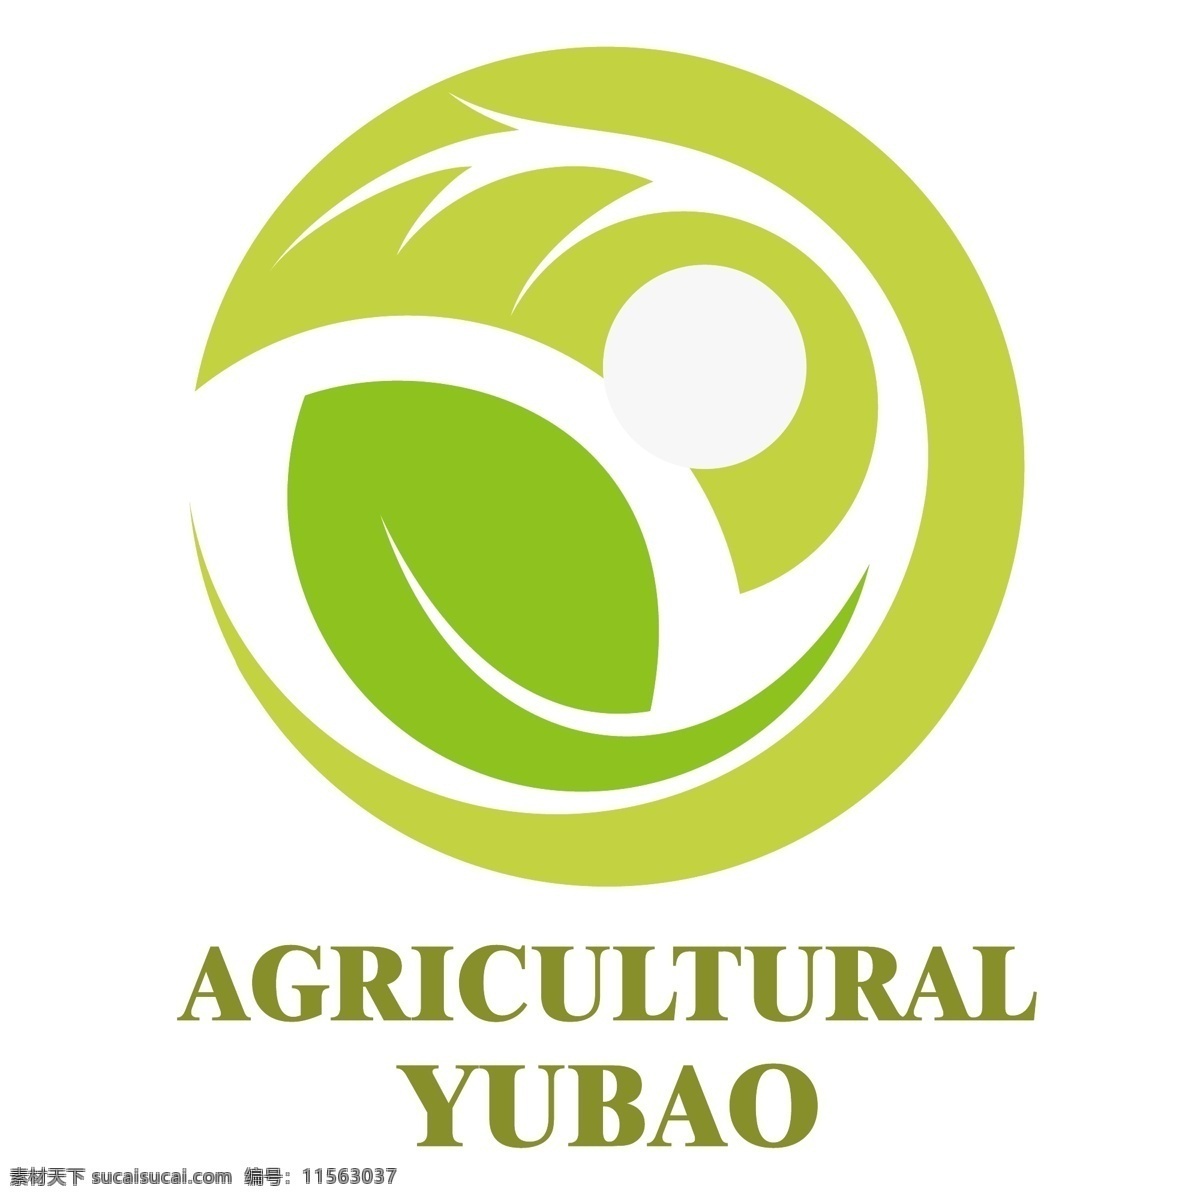 绿色环保 品牌 logo 绿色 环保 麦穗 稻田 绿叶 品牌标识设计 矢量素材 组合 企业logo 创意 商标 标志图标 企业 标志